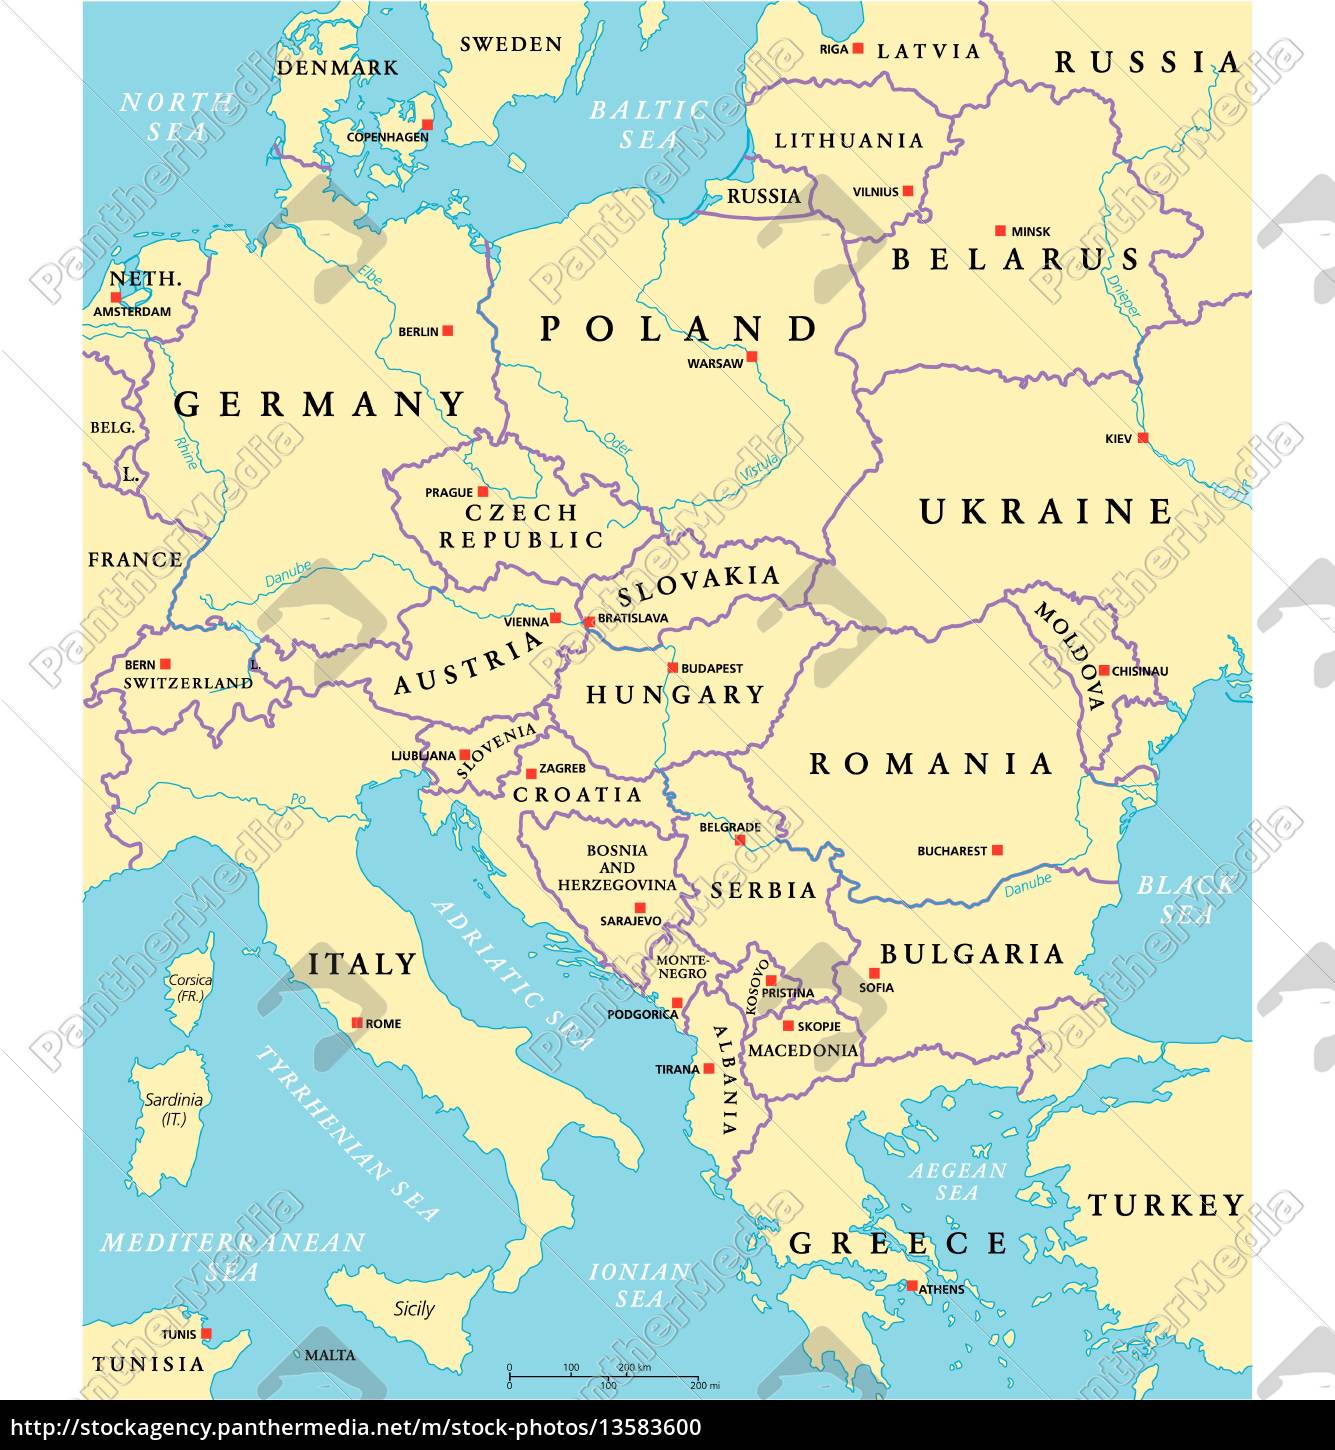 mapa político de europa central - Stockphoto - #13583600 | Agencia de